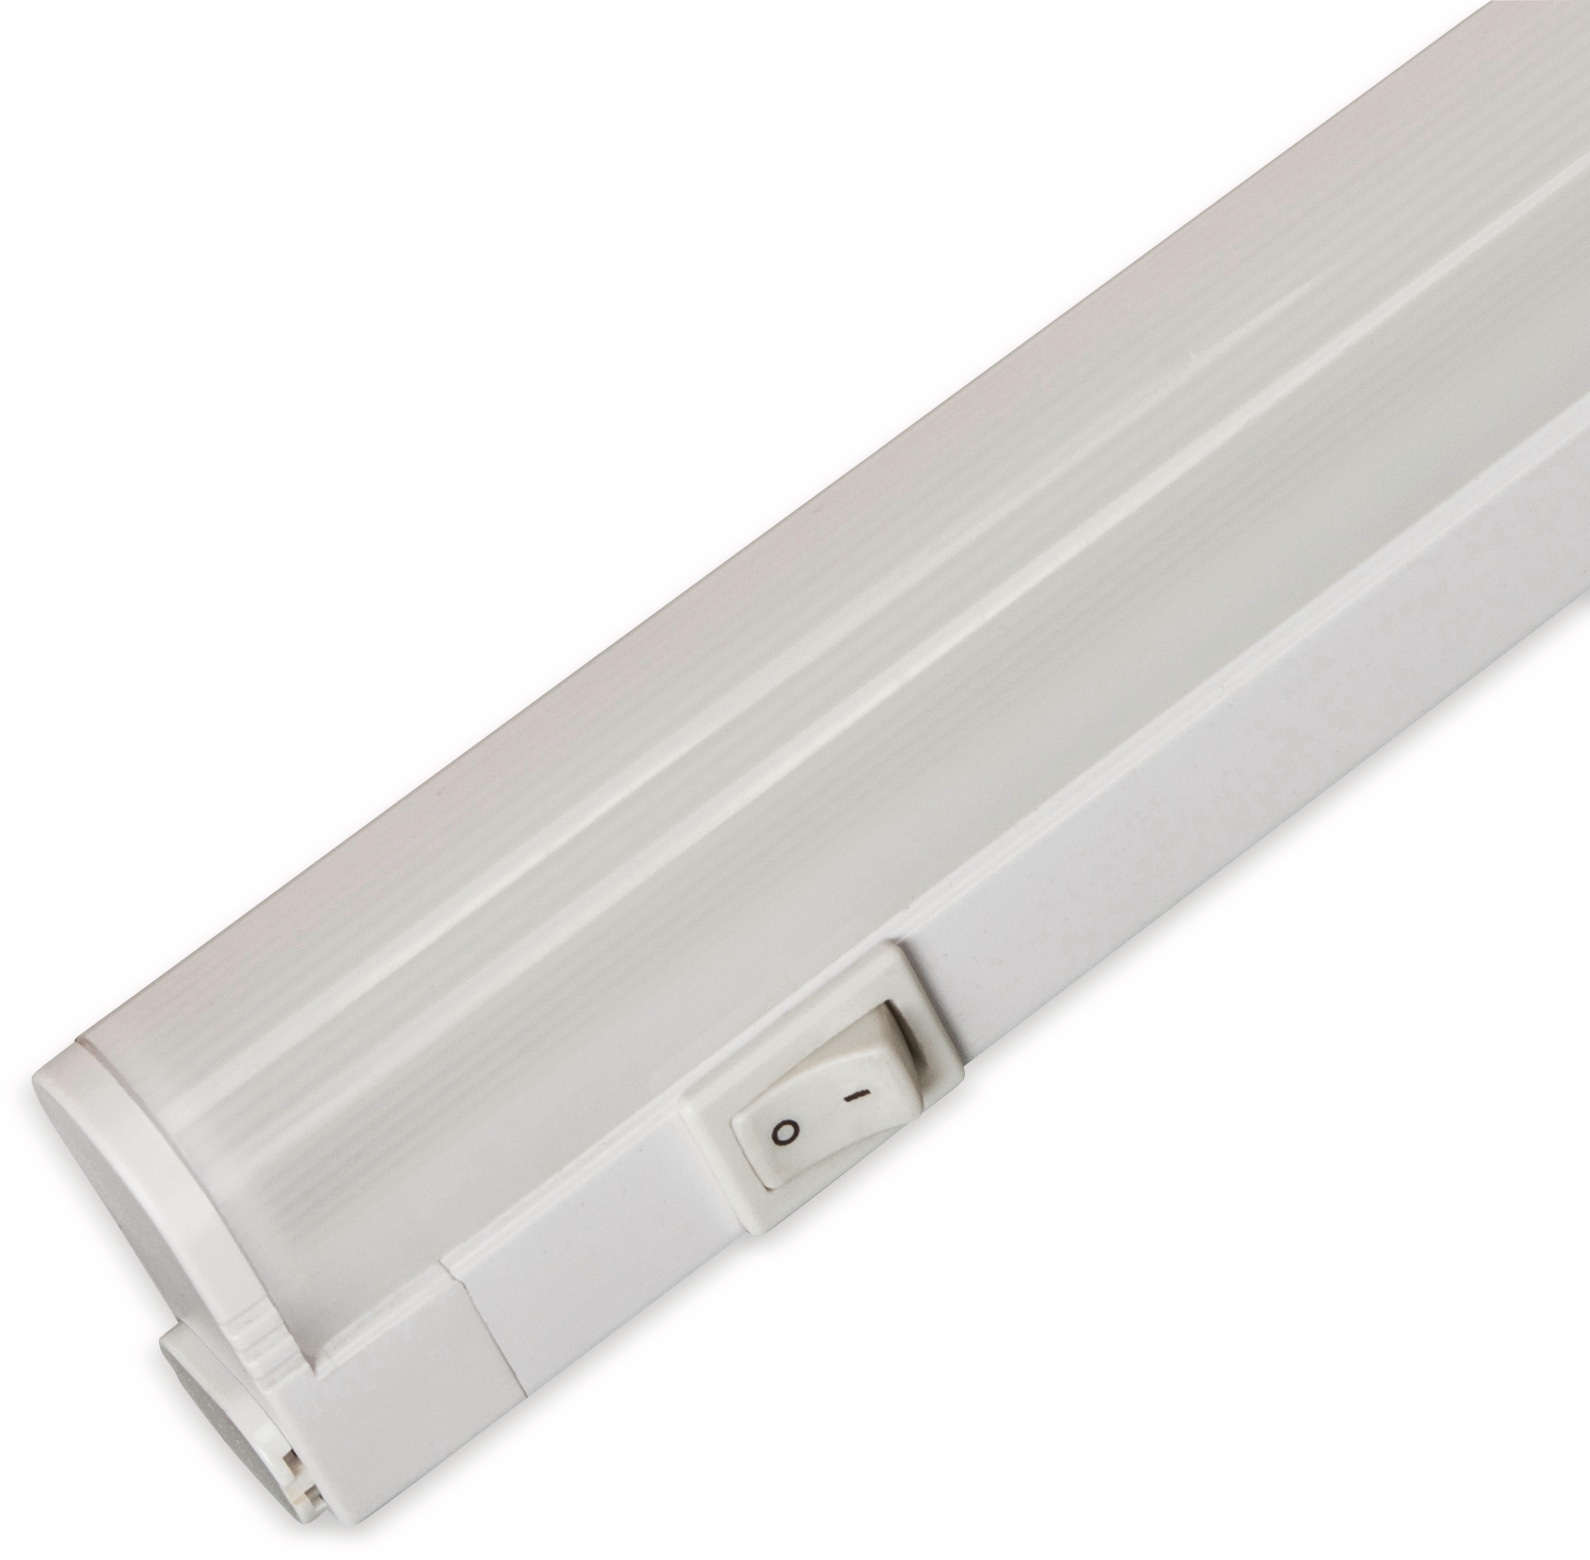 MÜLLER-LICHT LED-Unterbauleuchten, 20100331, Linex Switch Tone, 13 W, 1115 lm, 2200...4000 K, weiß